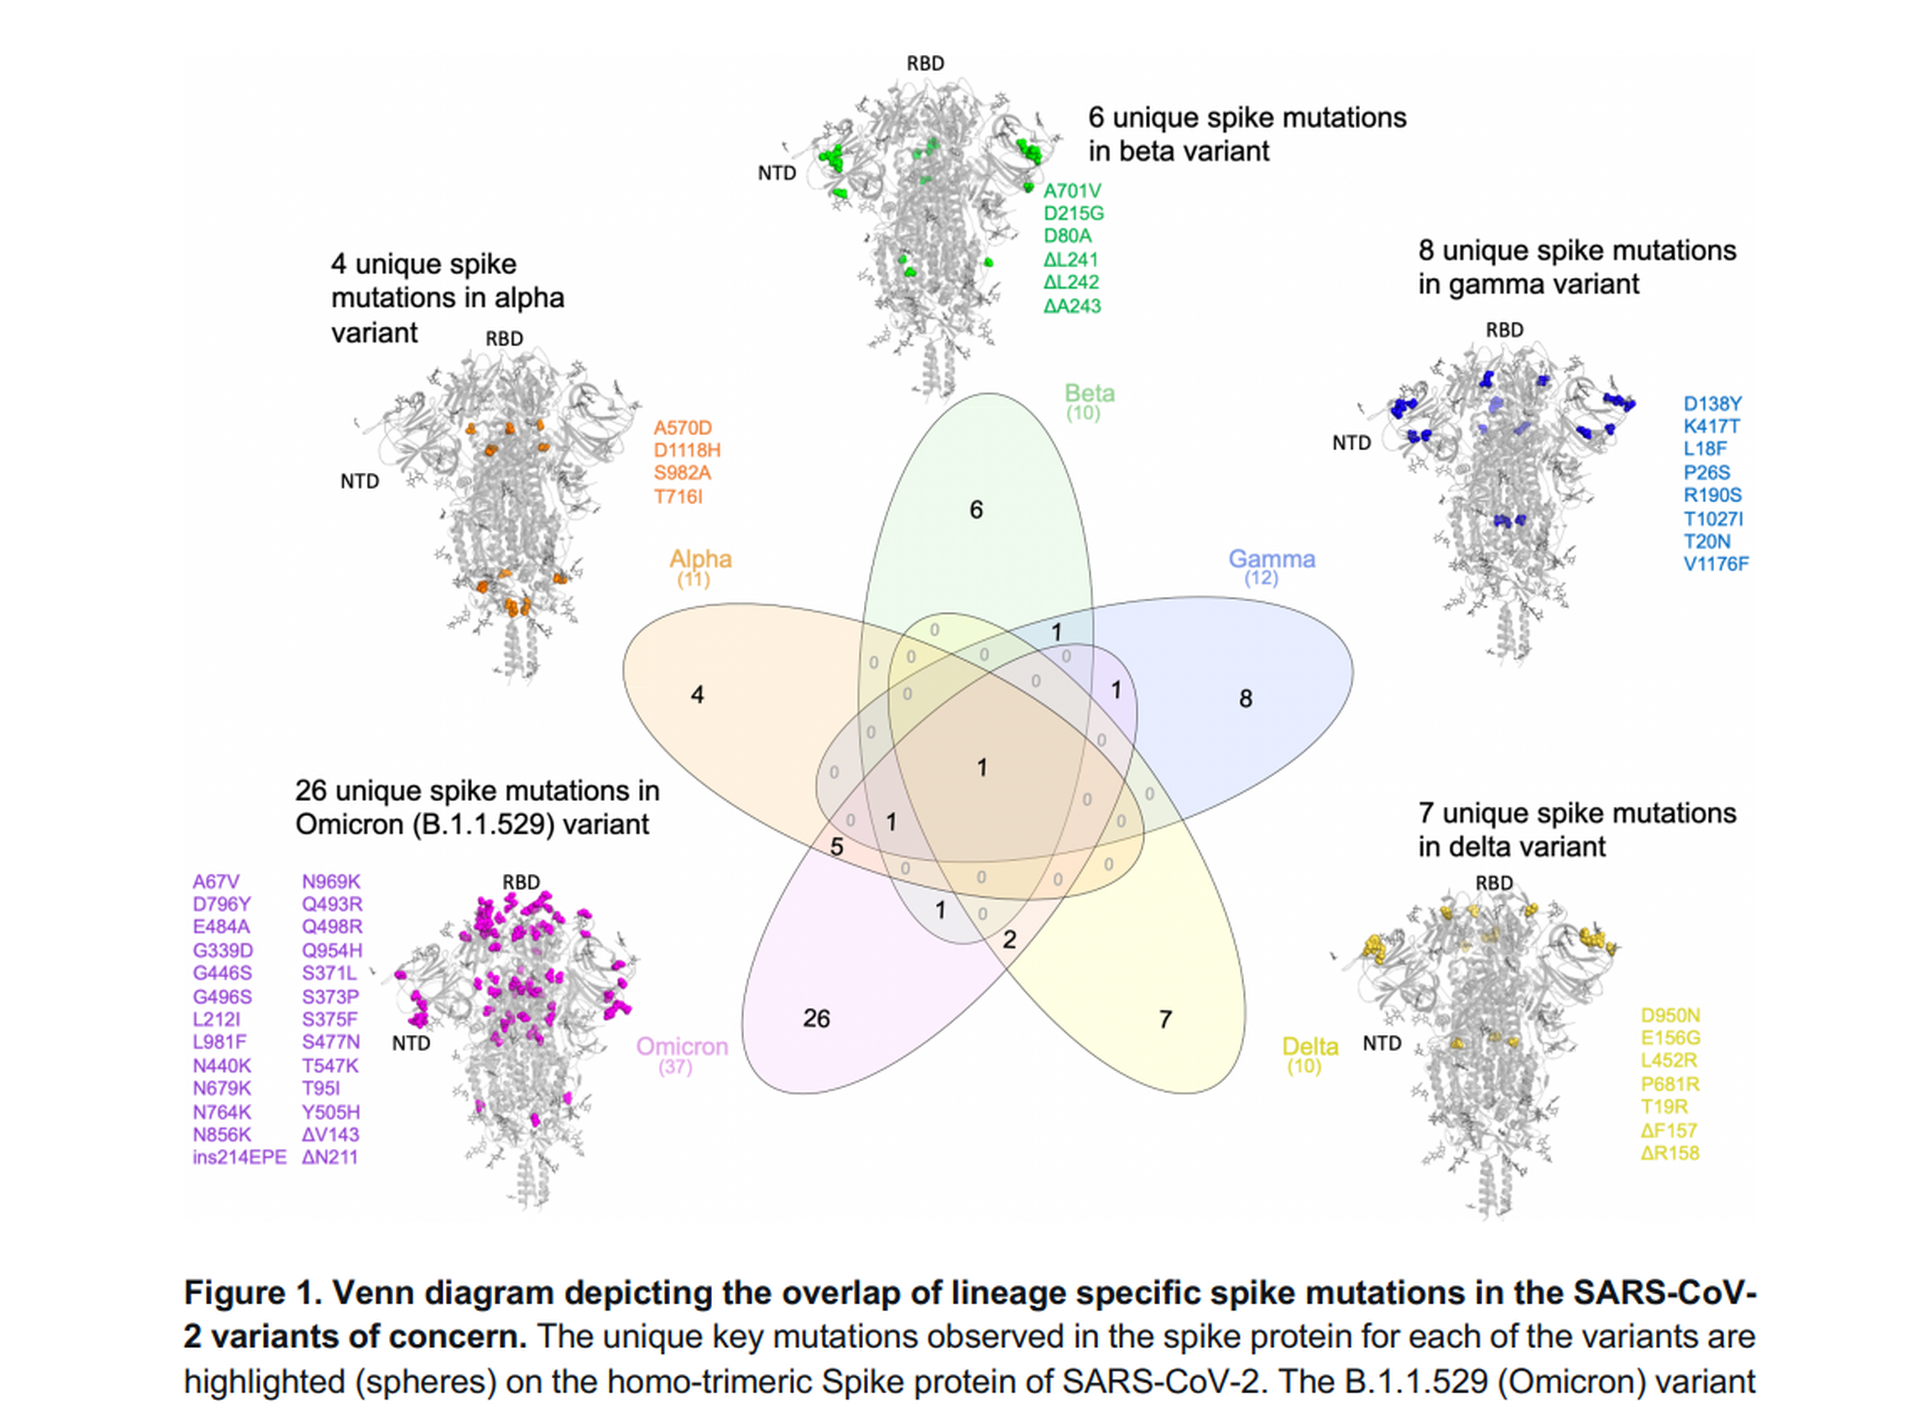 论文列出多款流行的新冠肺炎变种病毒，左下为Omicron，指其拥有26个独特的棘突蛋白突变（论文截图）